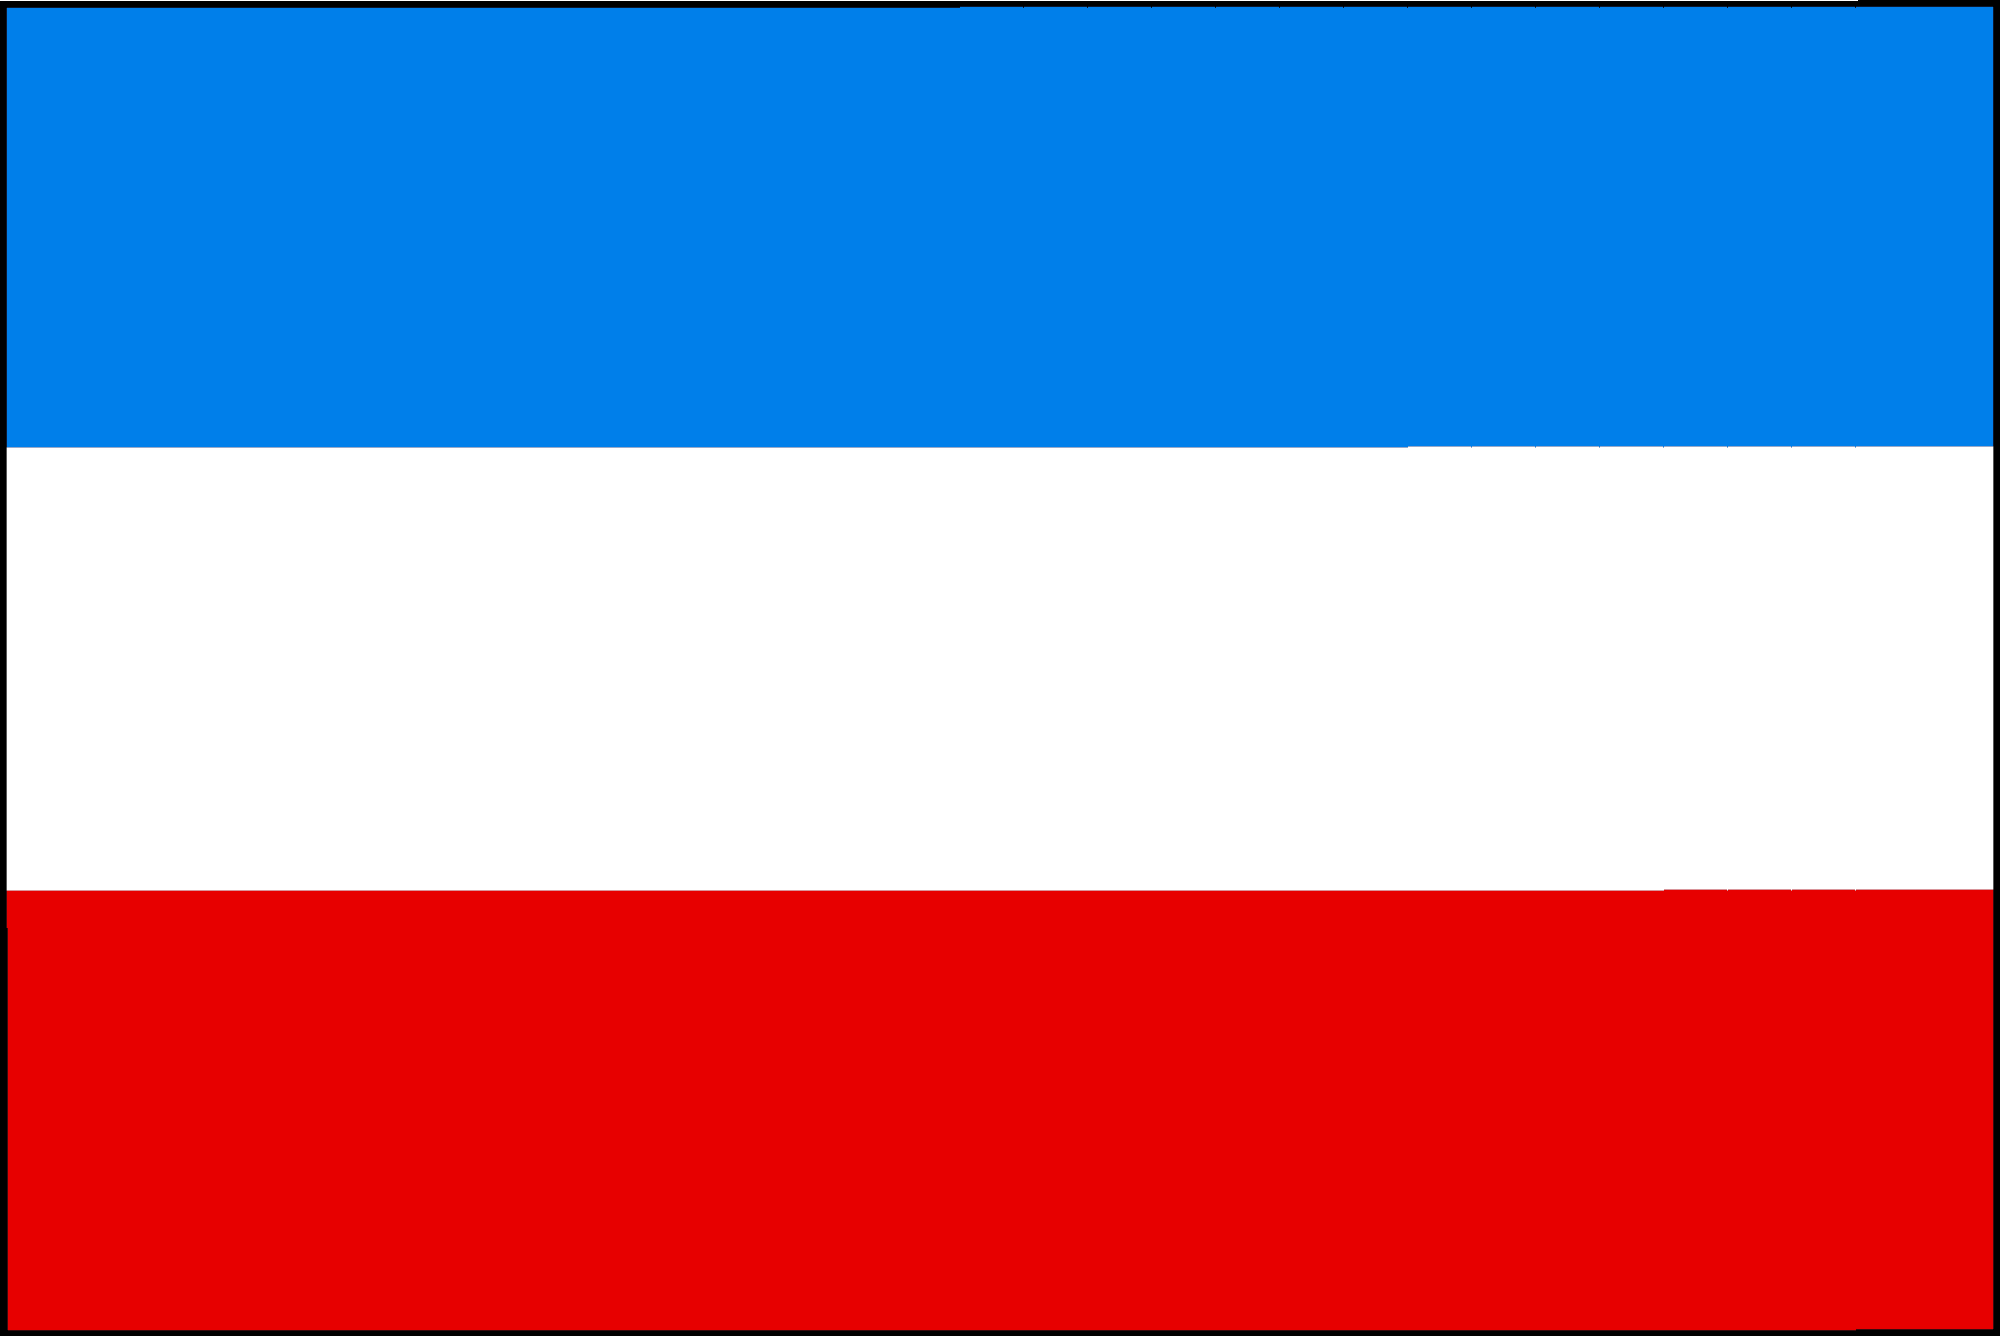 Fahne von Mannheim Premium-Fahne Fahne von Mannheim Premium-Flagge im  Fahnenshop bestellen